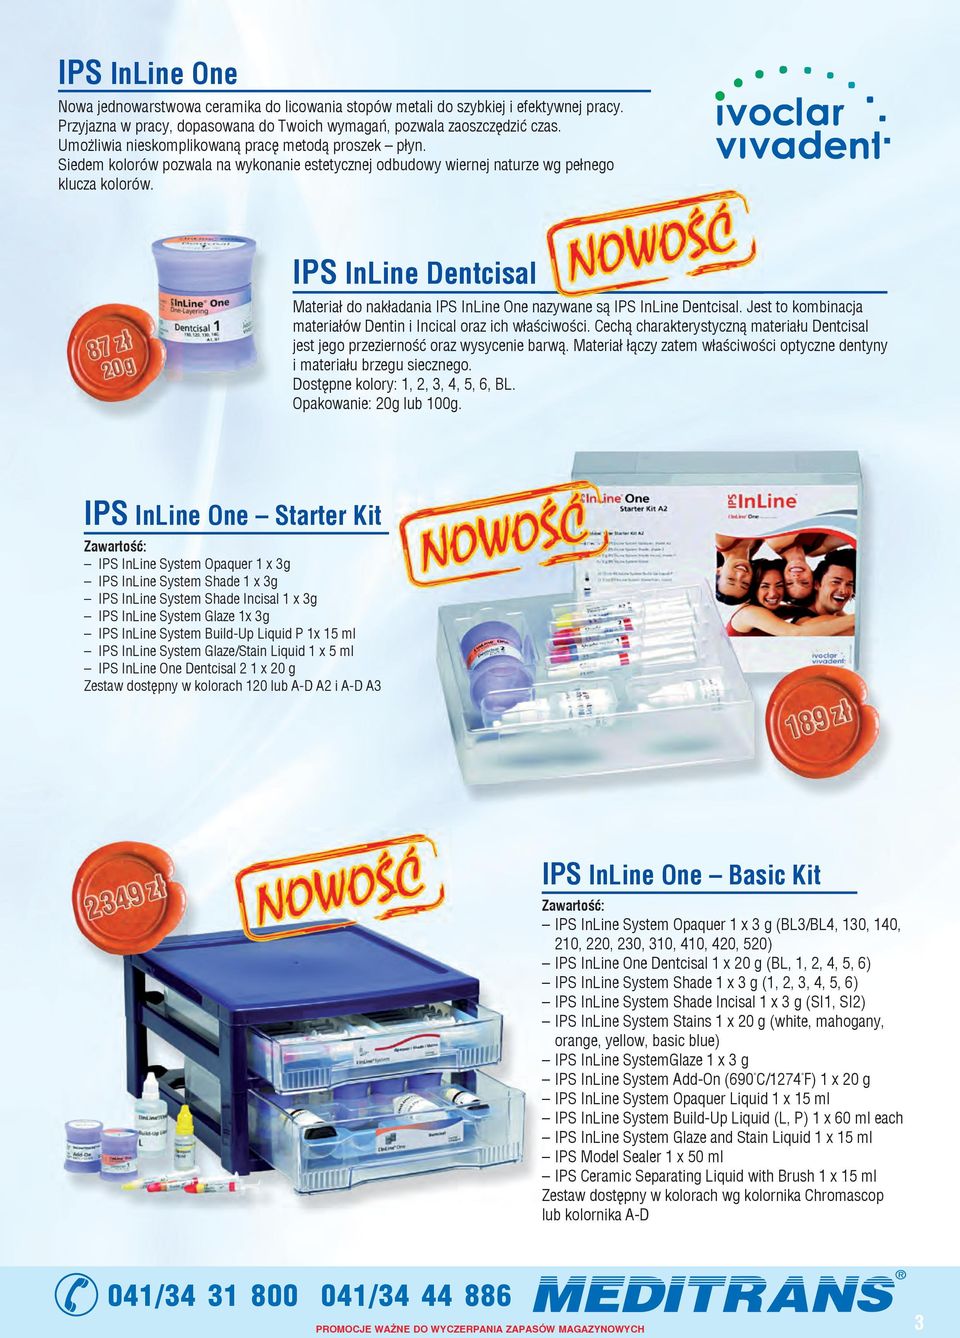 IPS InLine Dentcisal Materiał do nakładania IPS InLine One nazywane są IPS InLine Dentcisal. Jest to kombinacja materiałów Dentin i Incical oraz ich właściwości.